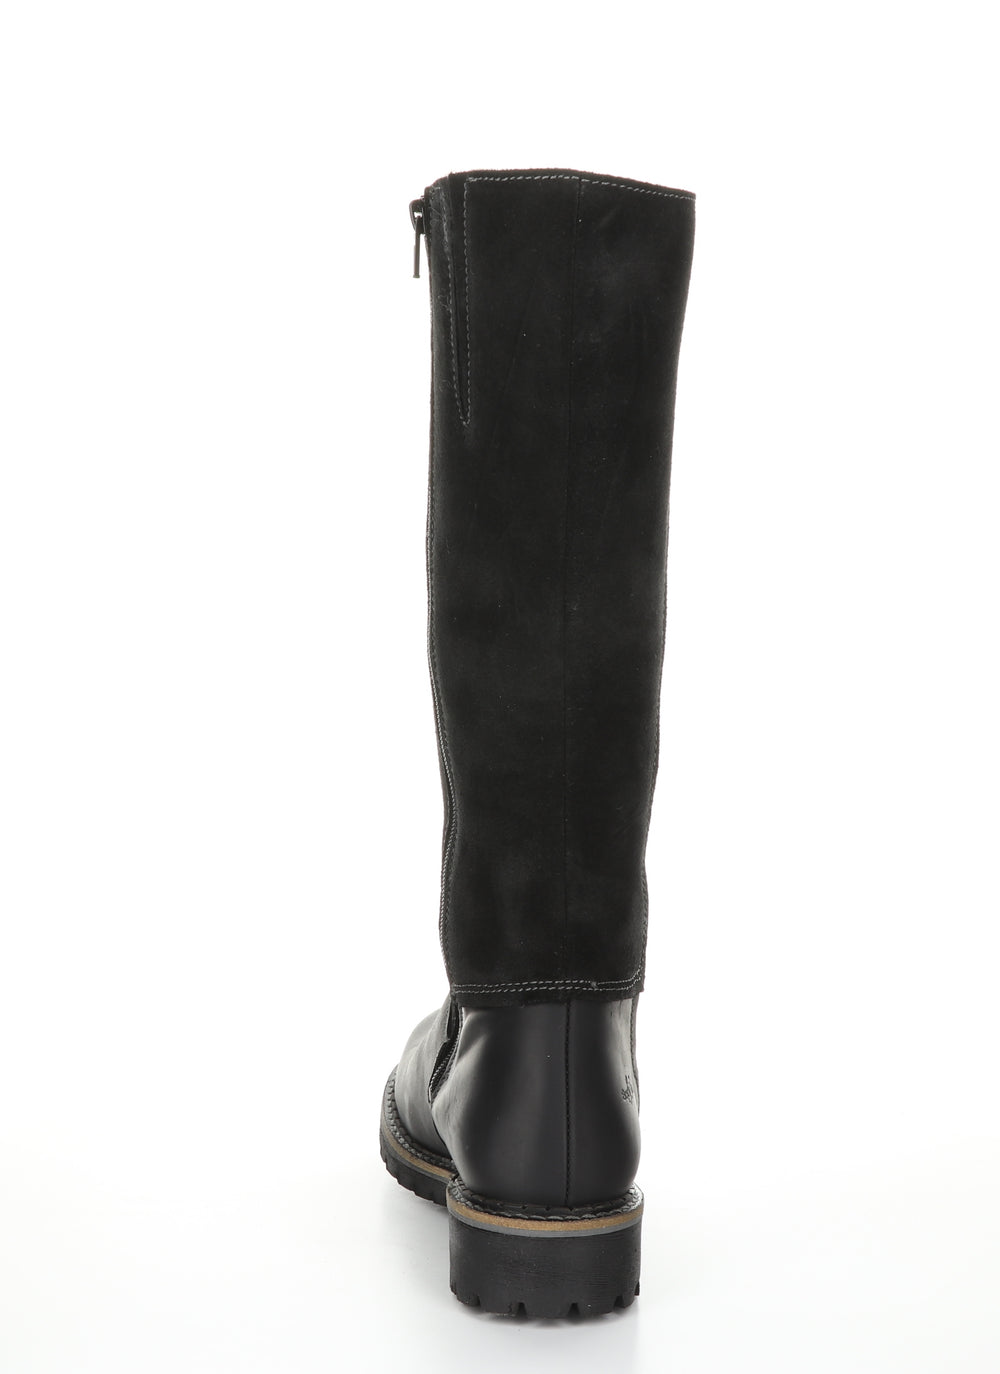 HUDSON Black Zip Up Boots|HUDSON Bottes avec Fermeture Zippée in Noir